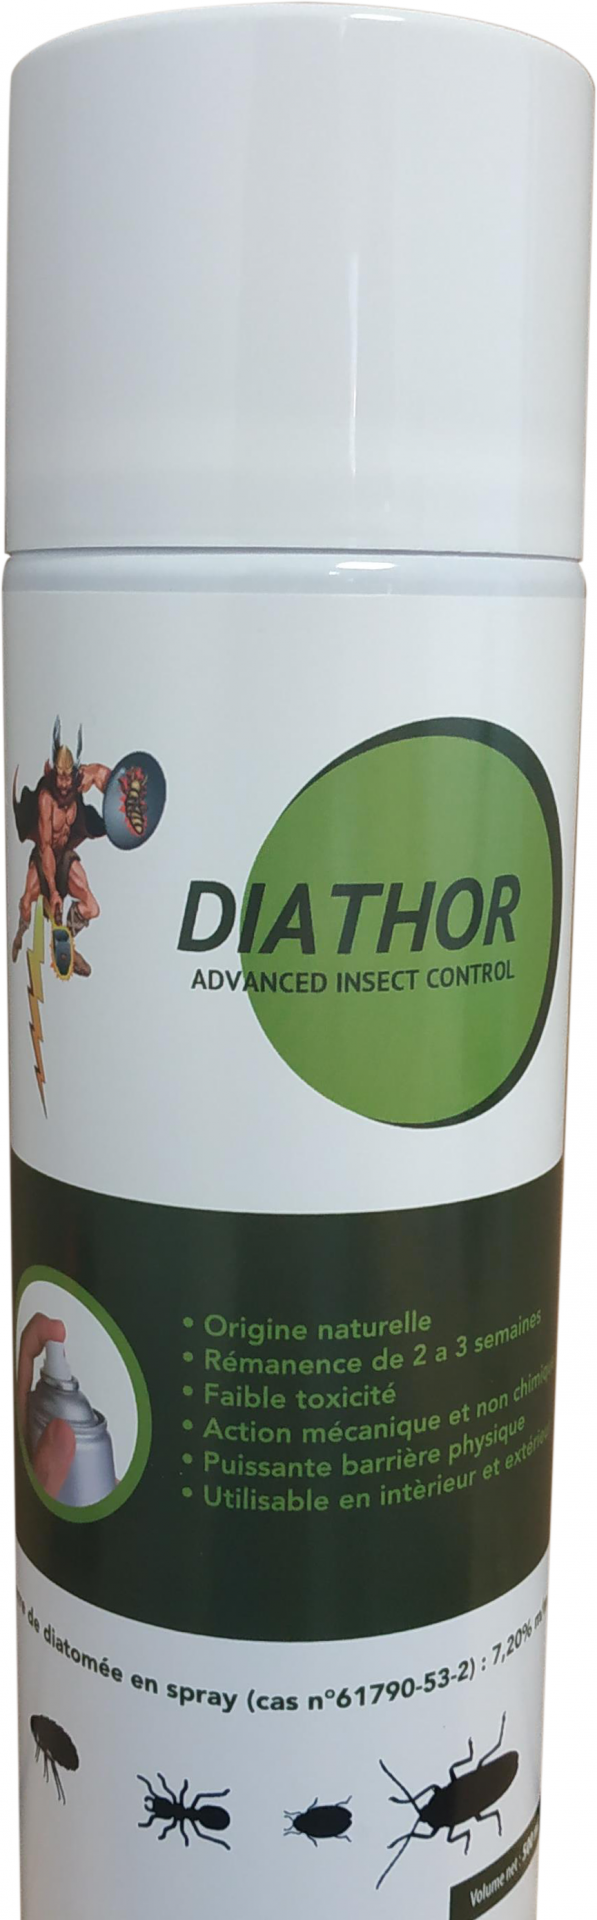 Terre de diatomée Digrain pour l'éradication des insectes rampants